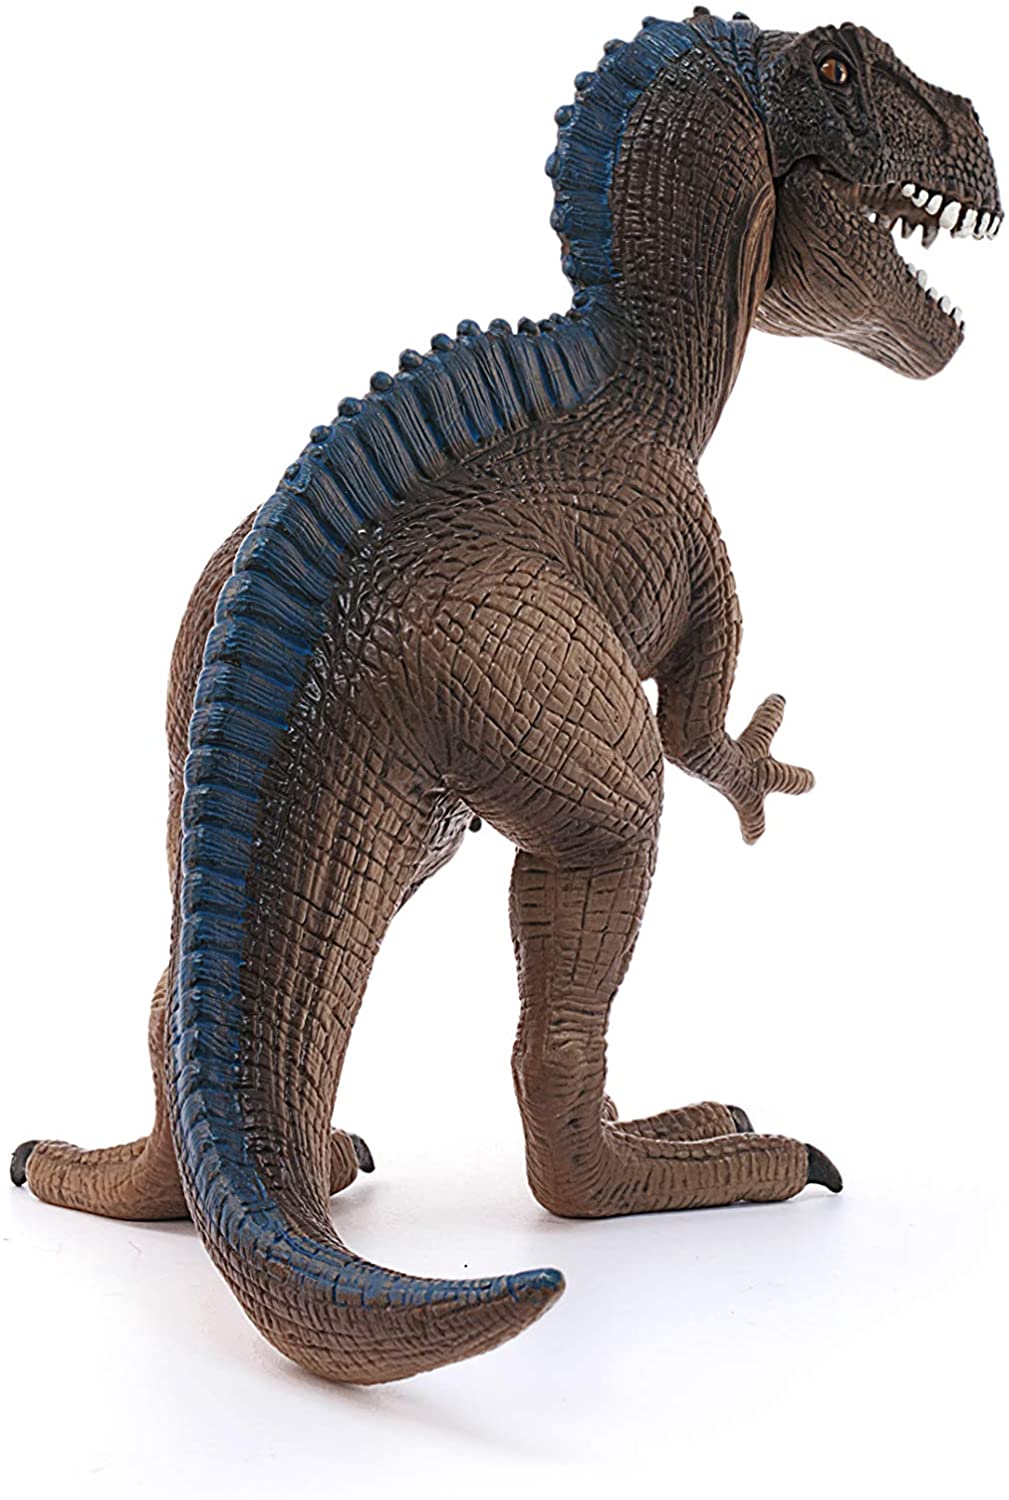 Schleich 14584" Acrocanthosaurus Figure